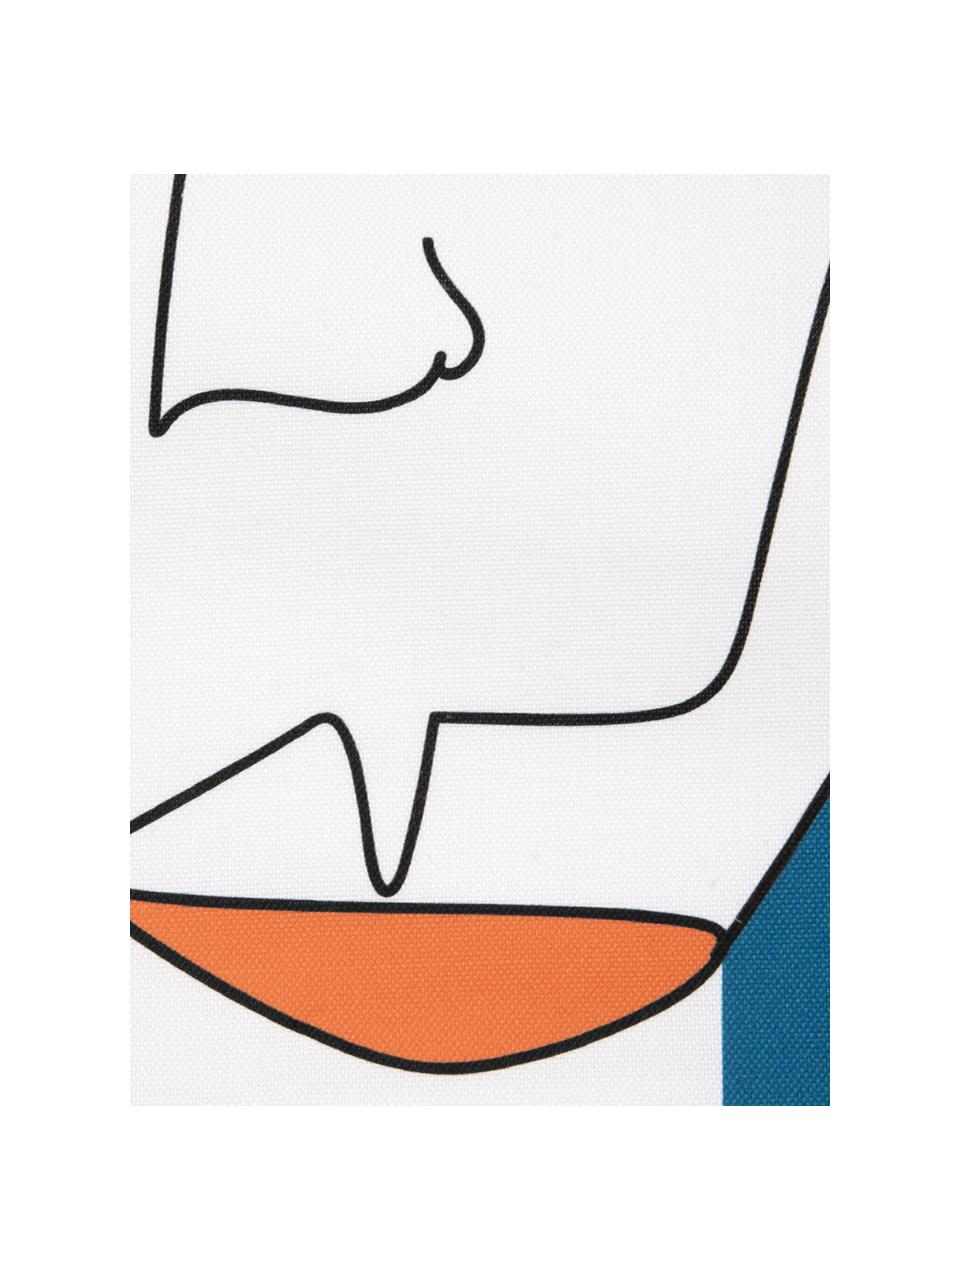 Kussenhoes Adrian met abstracte print in kleur, Weeftechniek: panama, Wit, multicolour, 40 x 40 cm